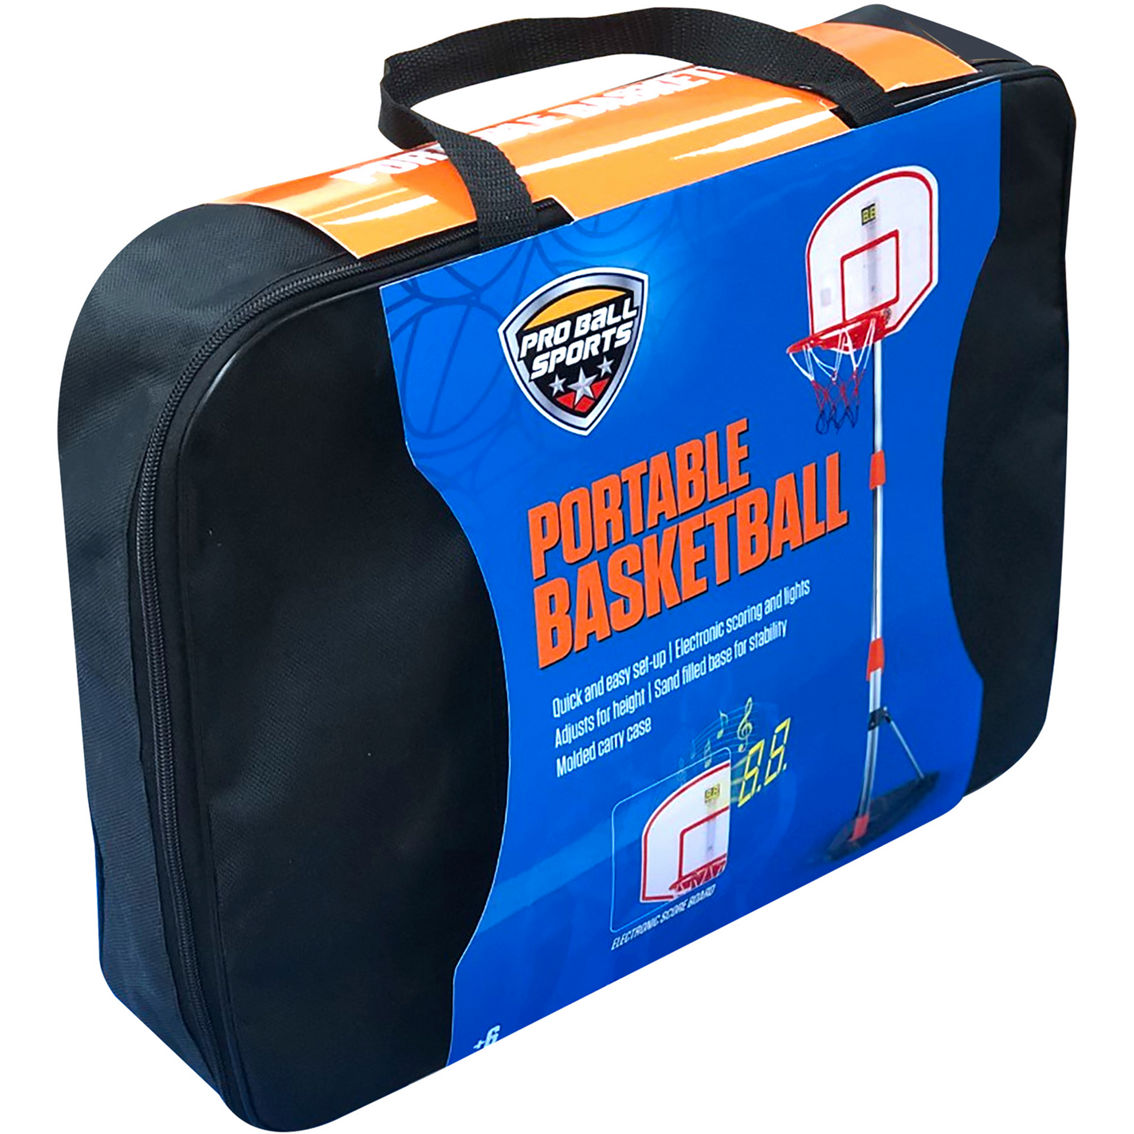 Pro Ball: Portable Basketball Game - Image 4 of 7